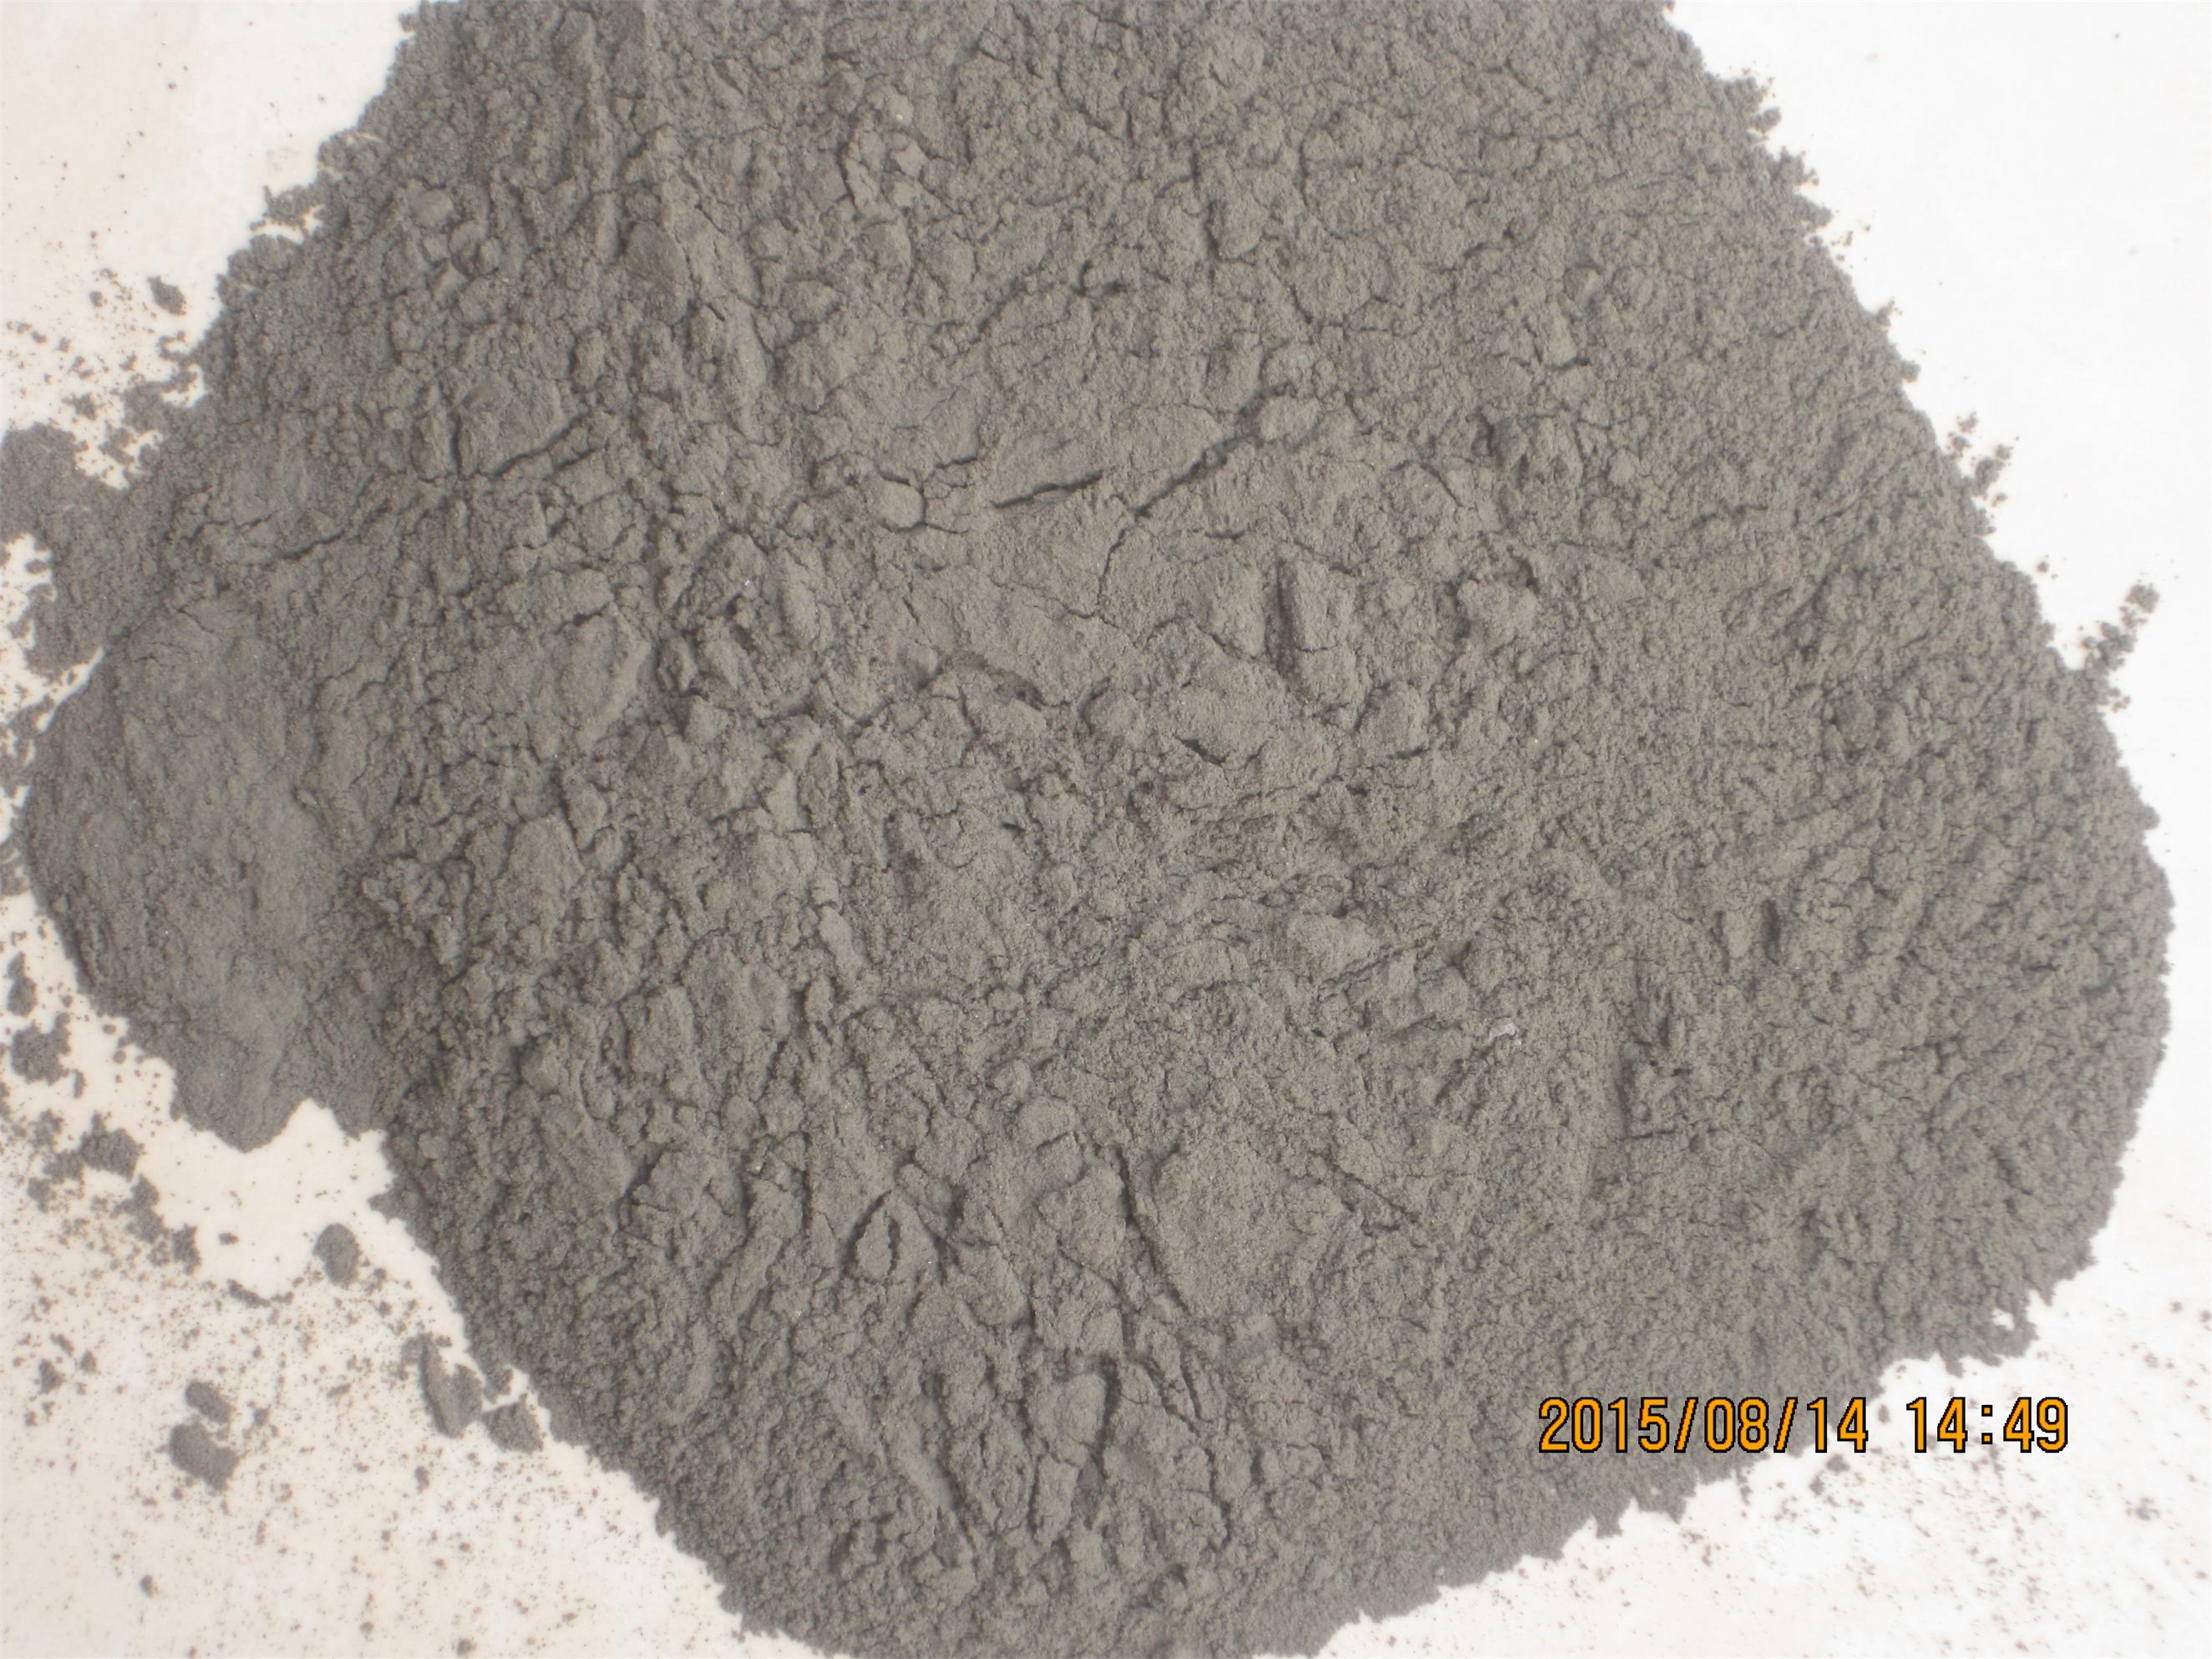 粘土质耐火土 1,特性及用途:粘土质耐火砖属弱酸性耐火材料,其热稳定